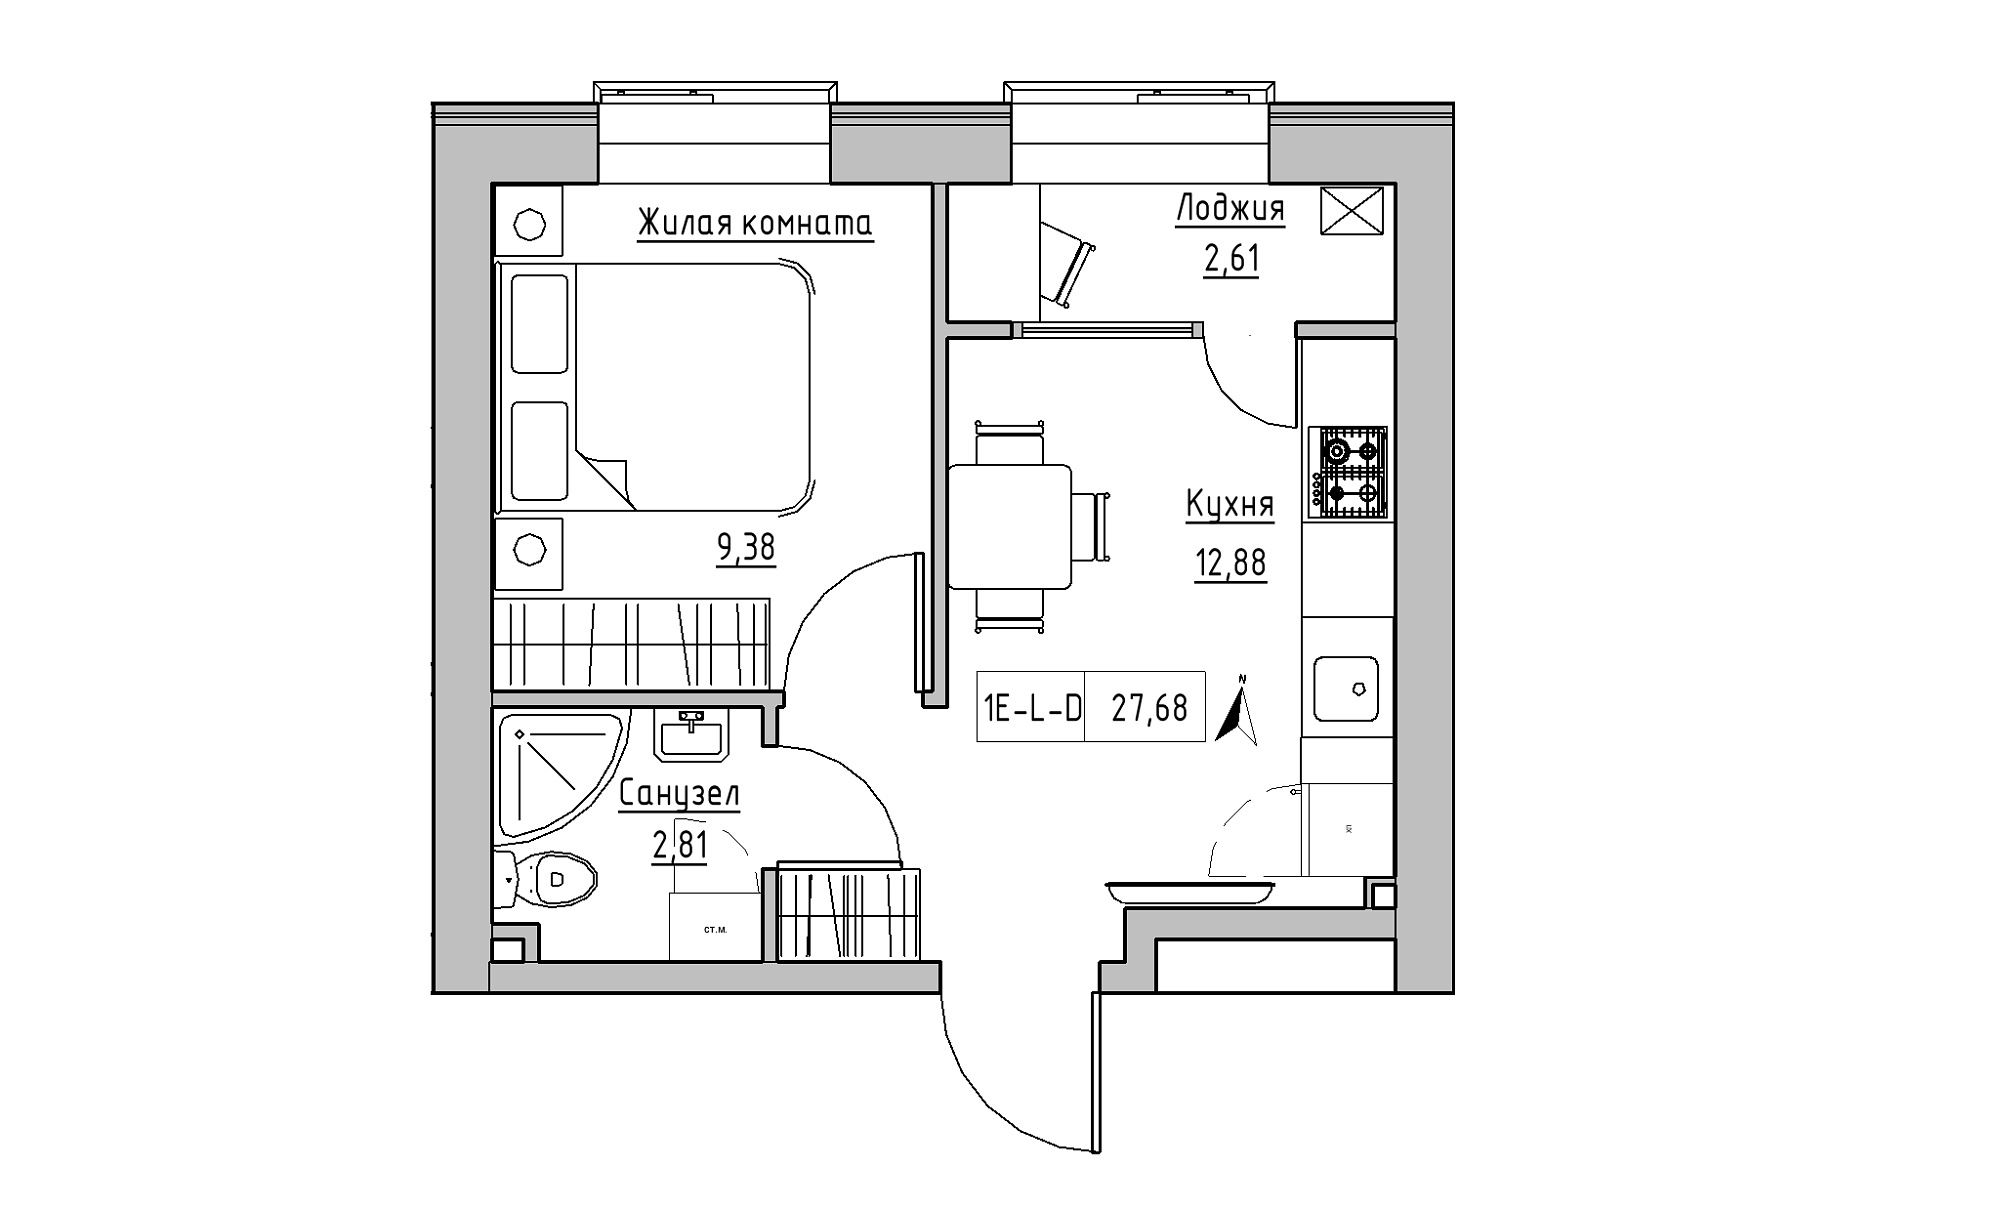 Планування 1-к квартира площею 27.68м2, KS-016-05/0001.